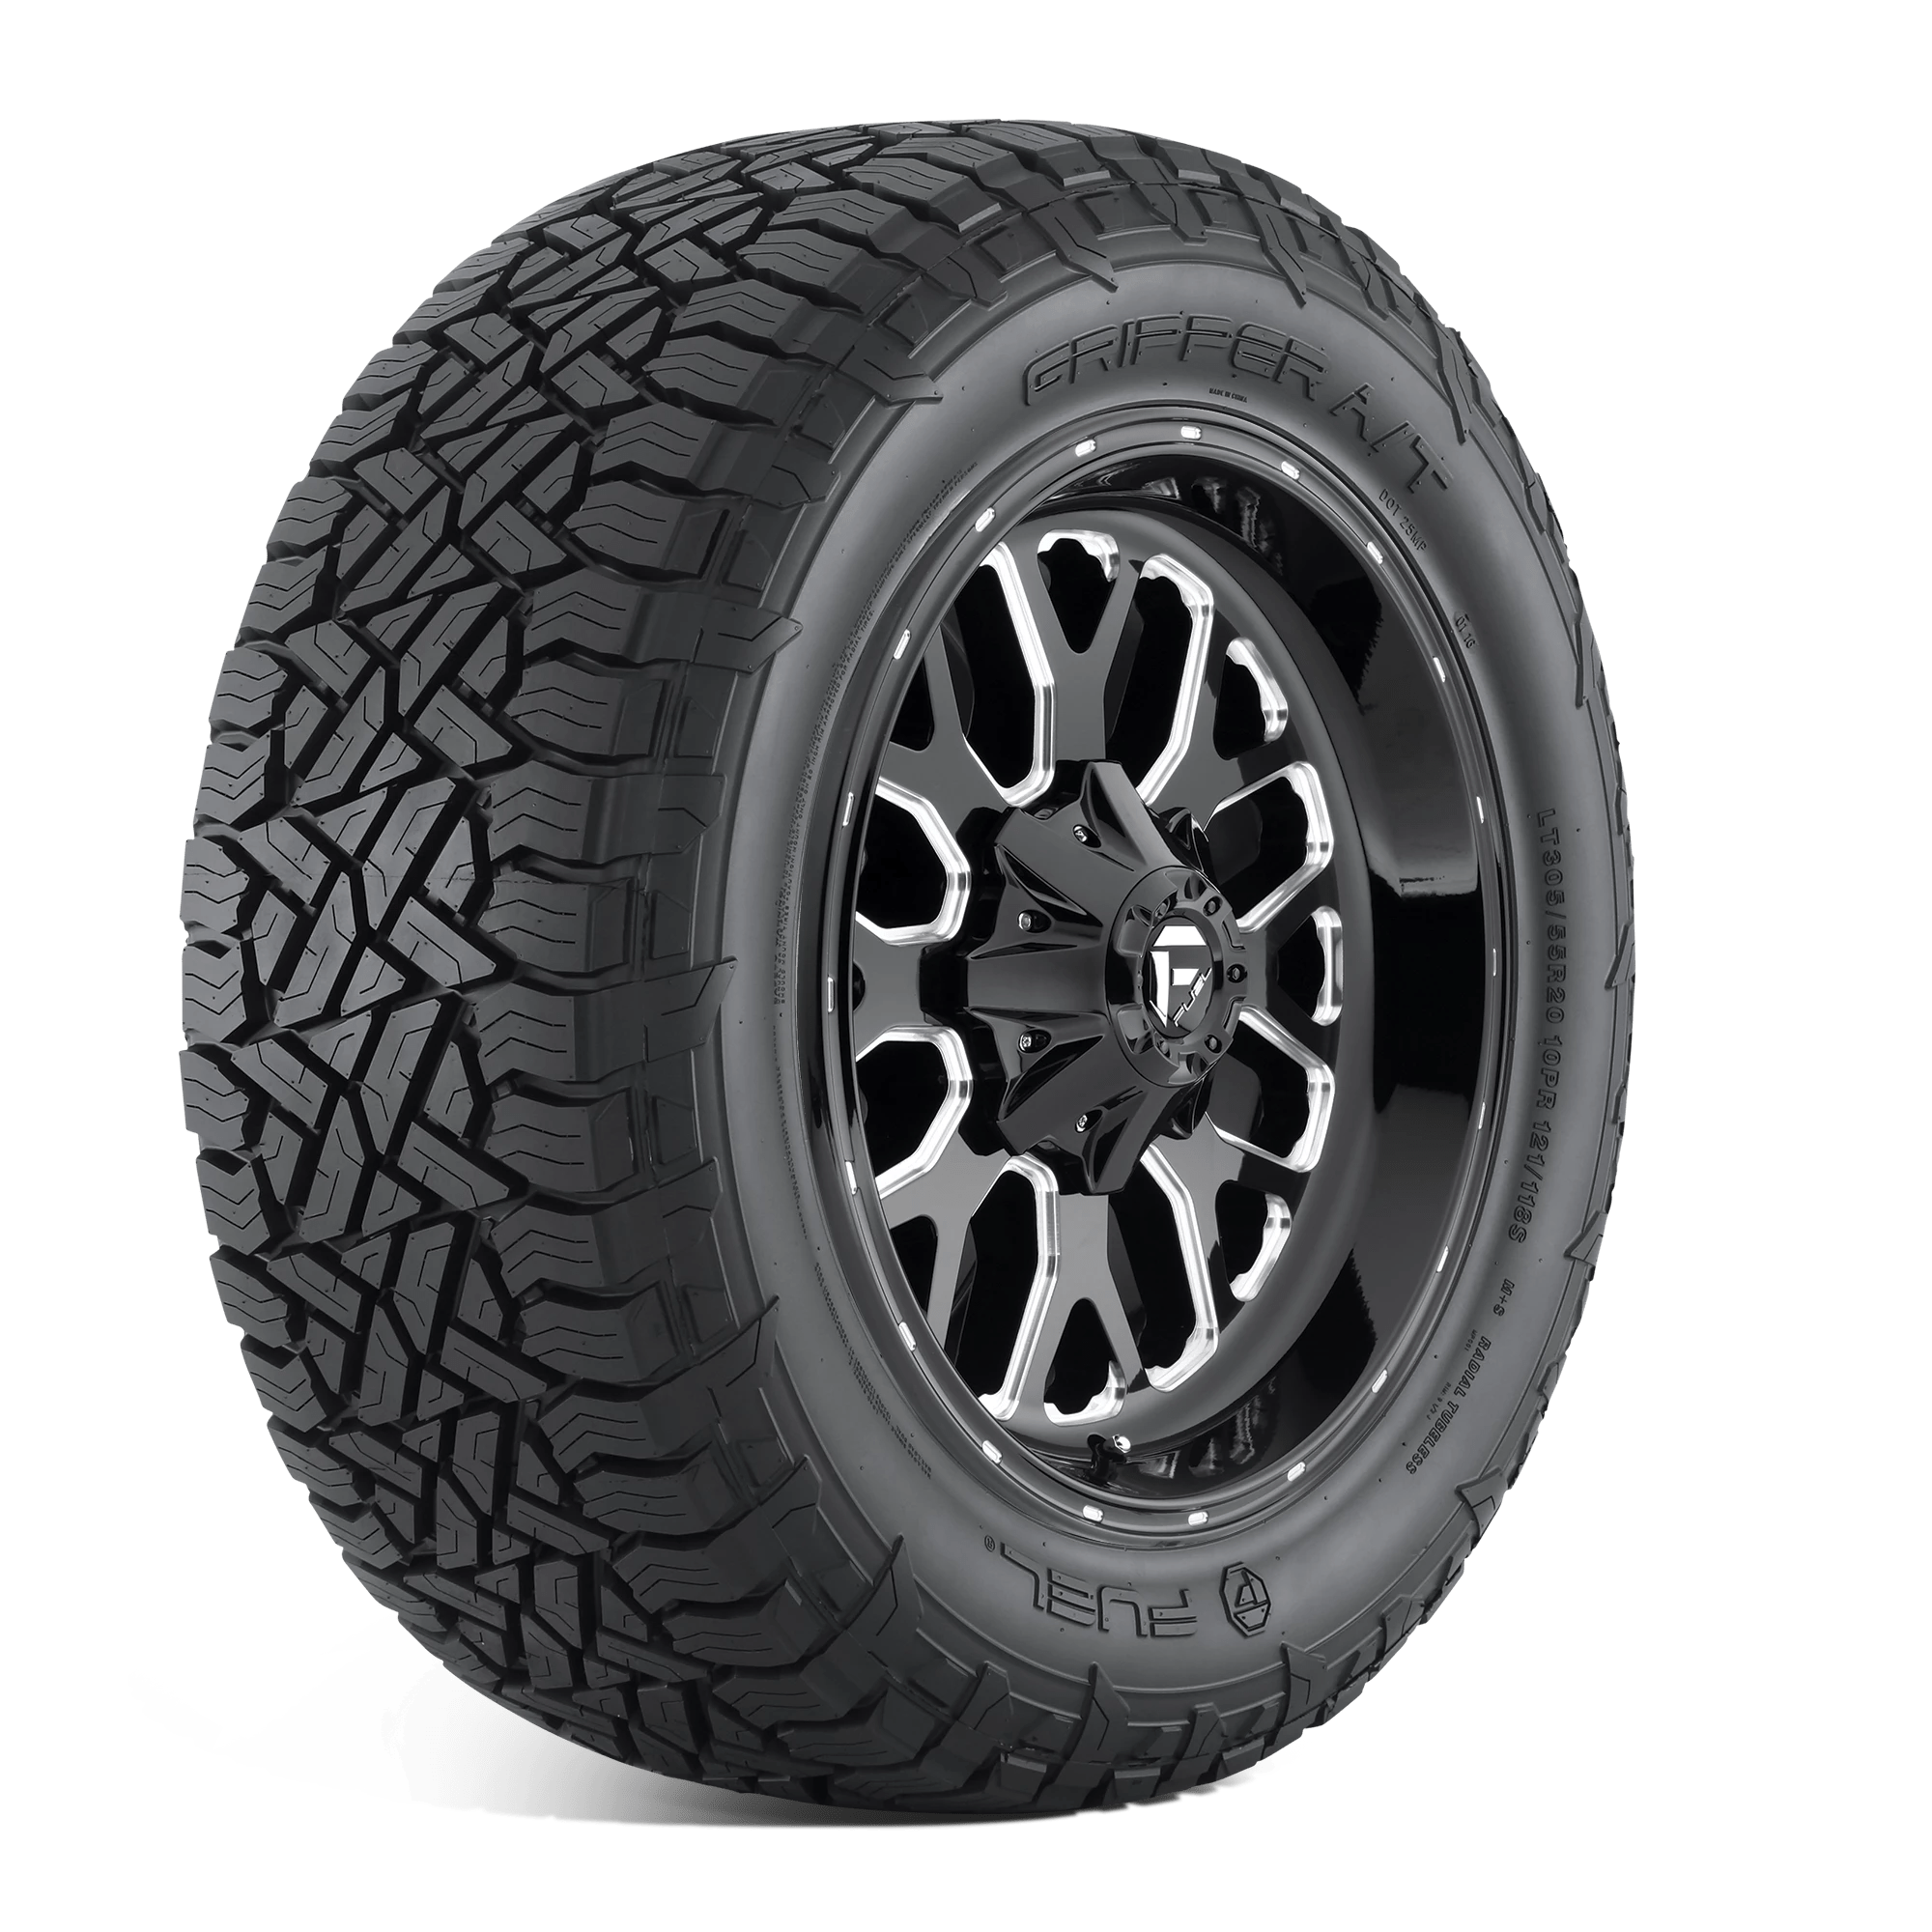 FUEL GRIPPER AT 325/50R22 (34.8X13.3R 22) Tires